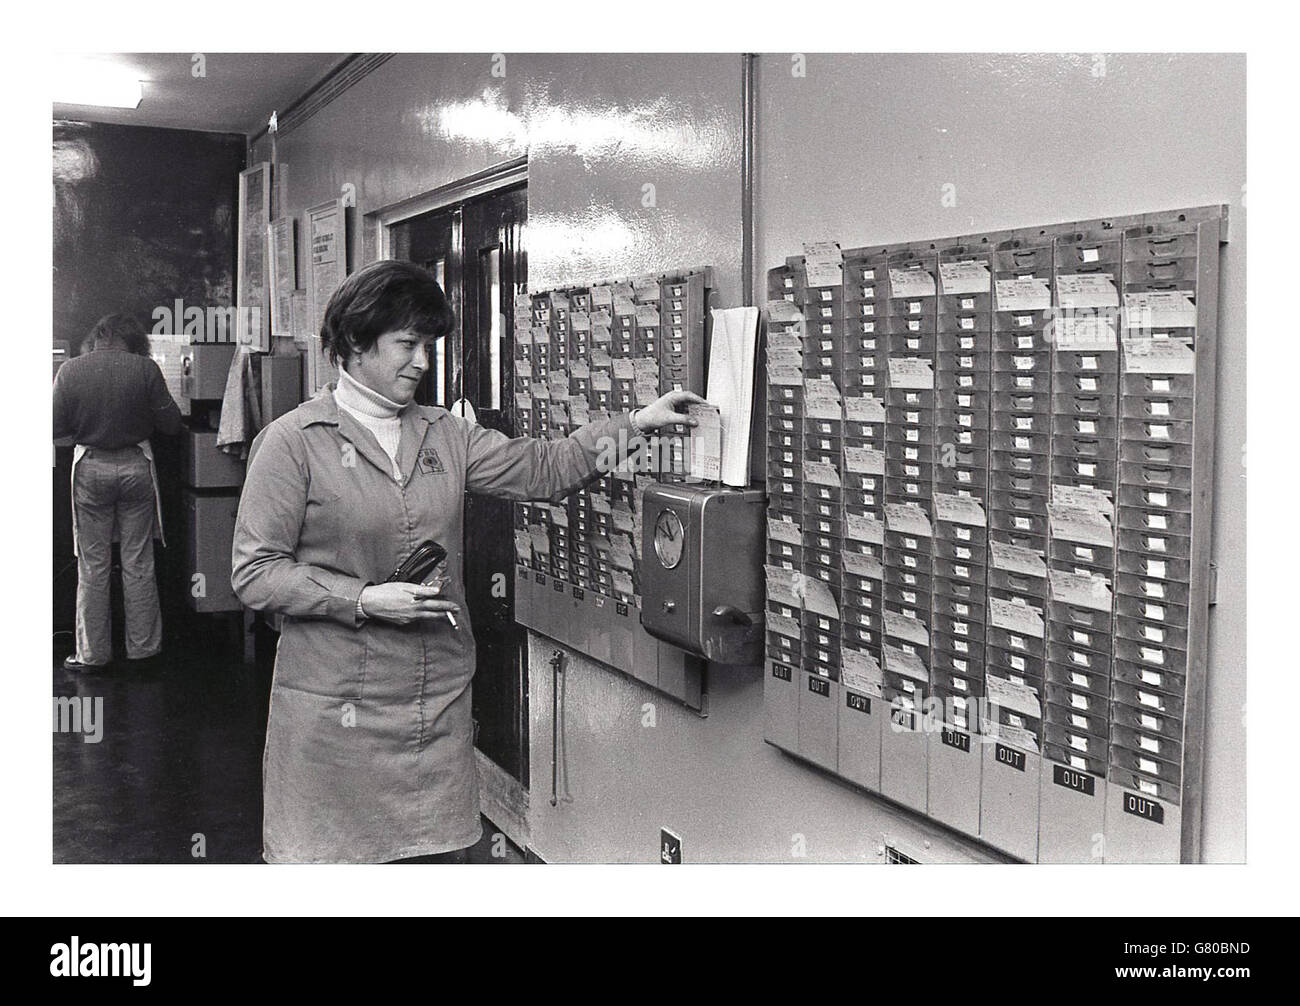 Années 1970, historique, l'image montre une femme de pointage au travail en mettant sa carte d'employé dans l'horloge ou l'horloge de pointage. Banque D'Images